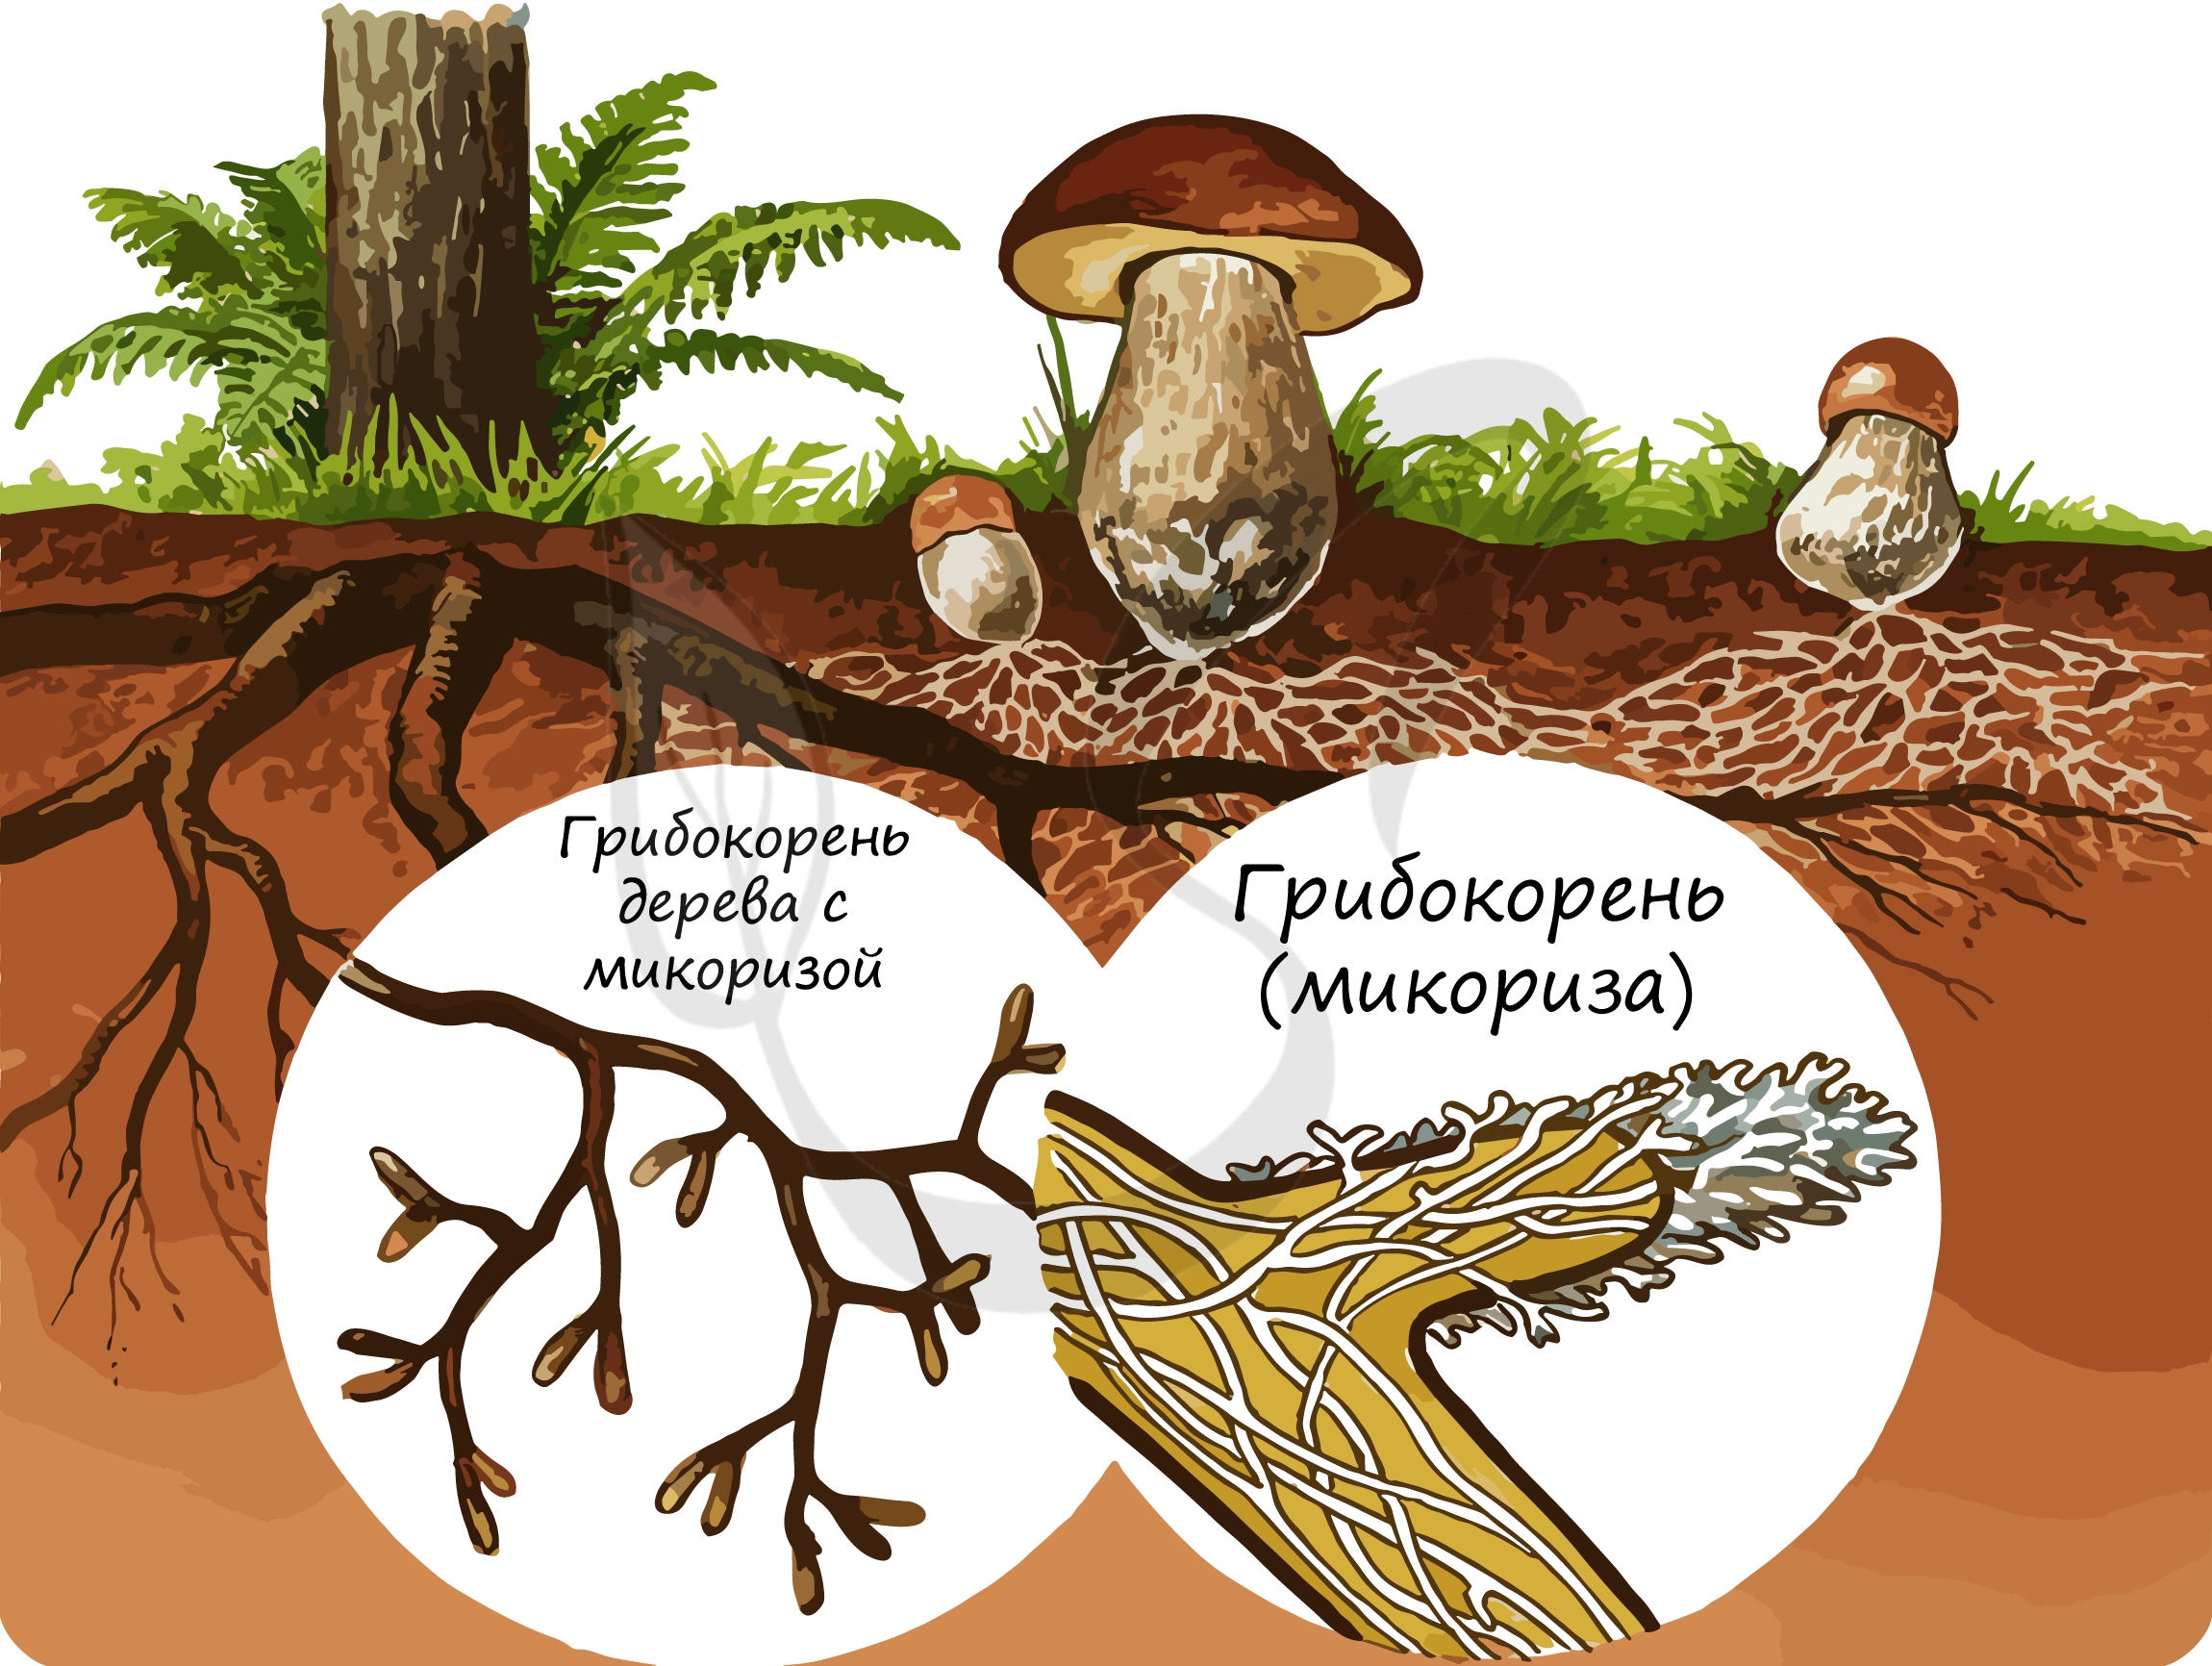 Грибы особая группа симбиотических организмов. Строение гриба микориза. Микориза у шляпочных грибов. Что такое микориза у грибов. Микориза грибокорень.